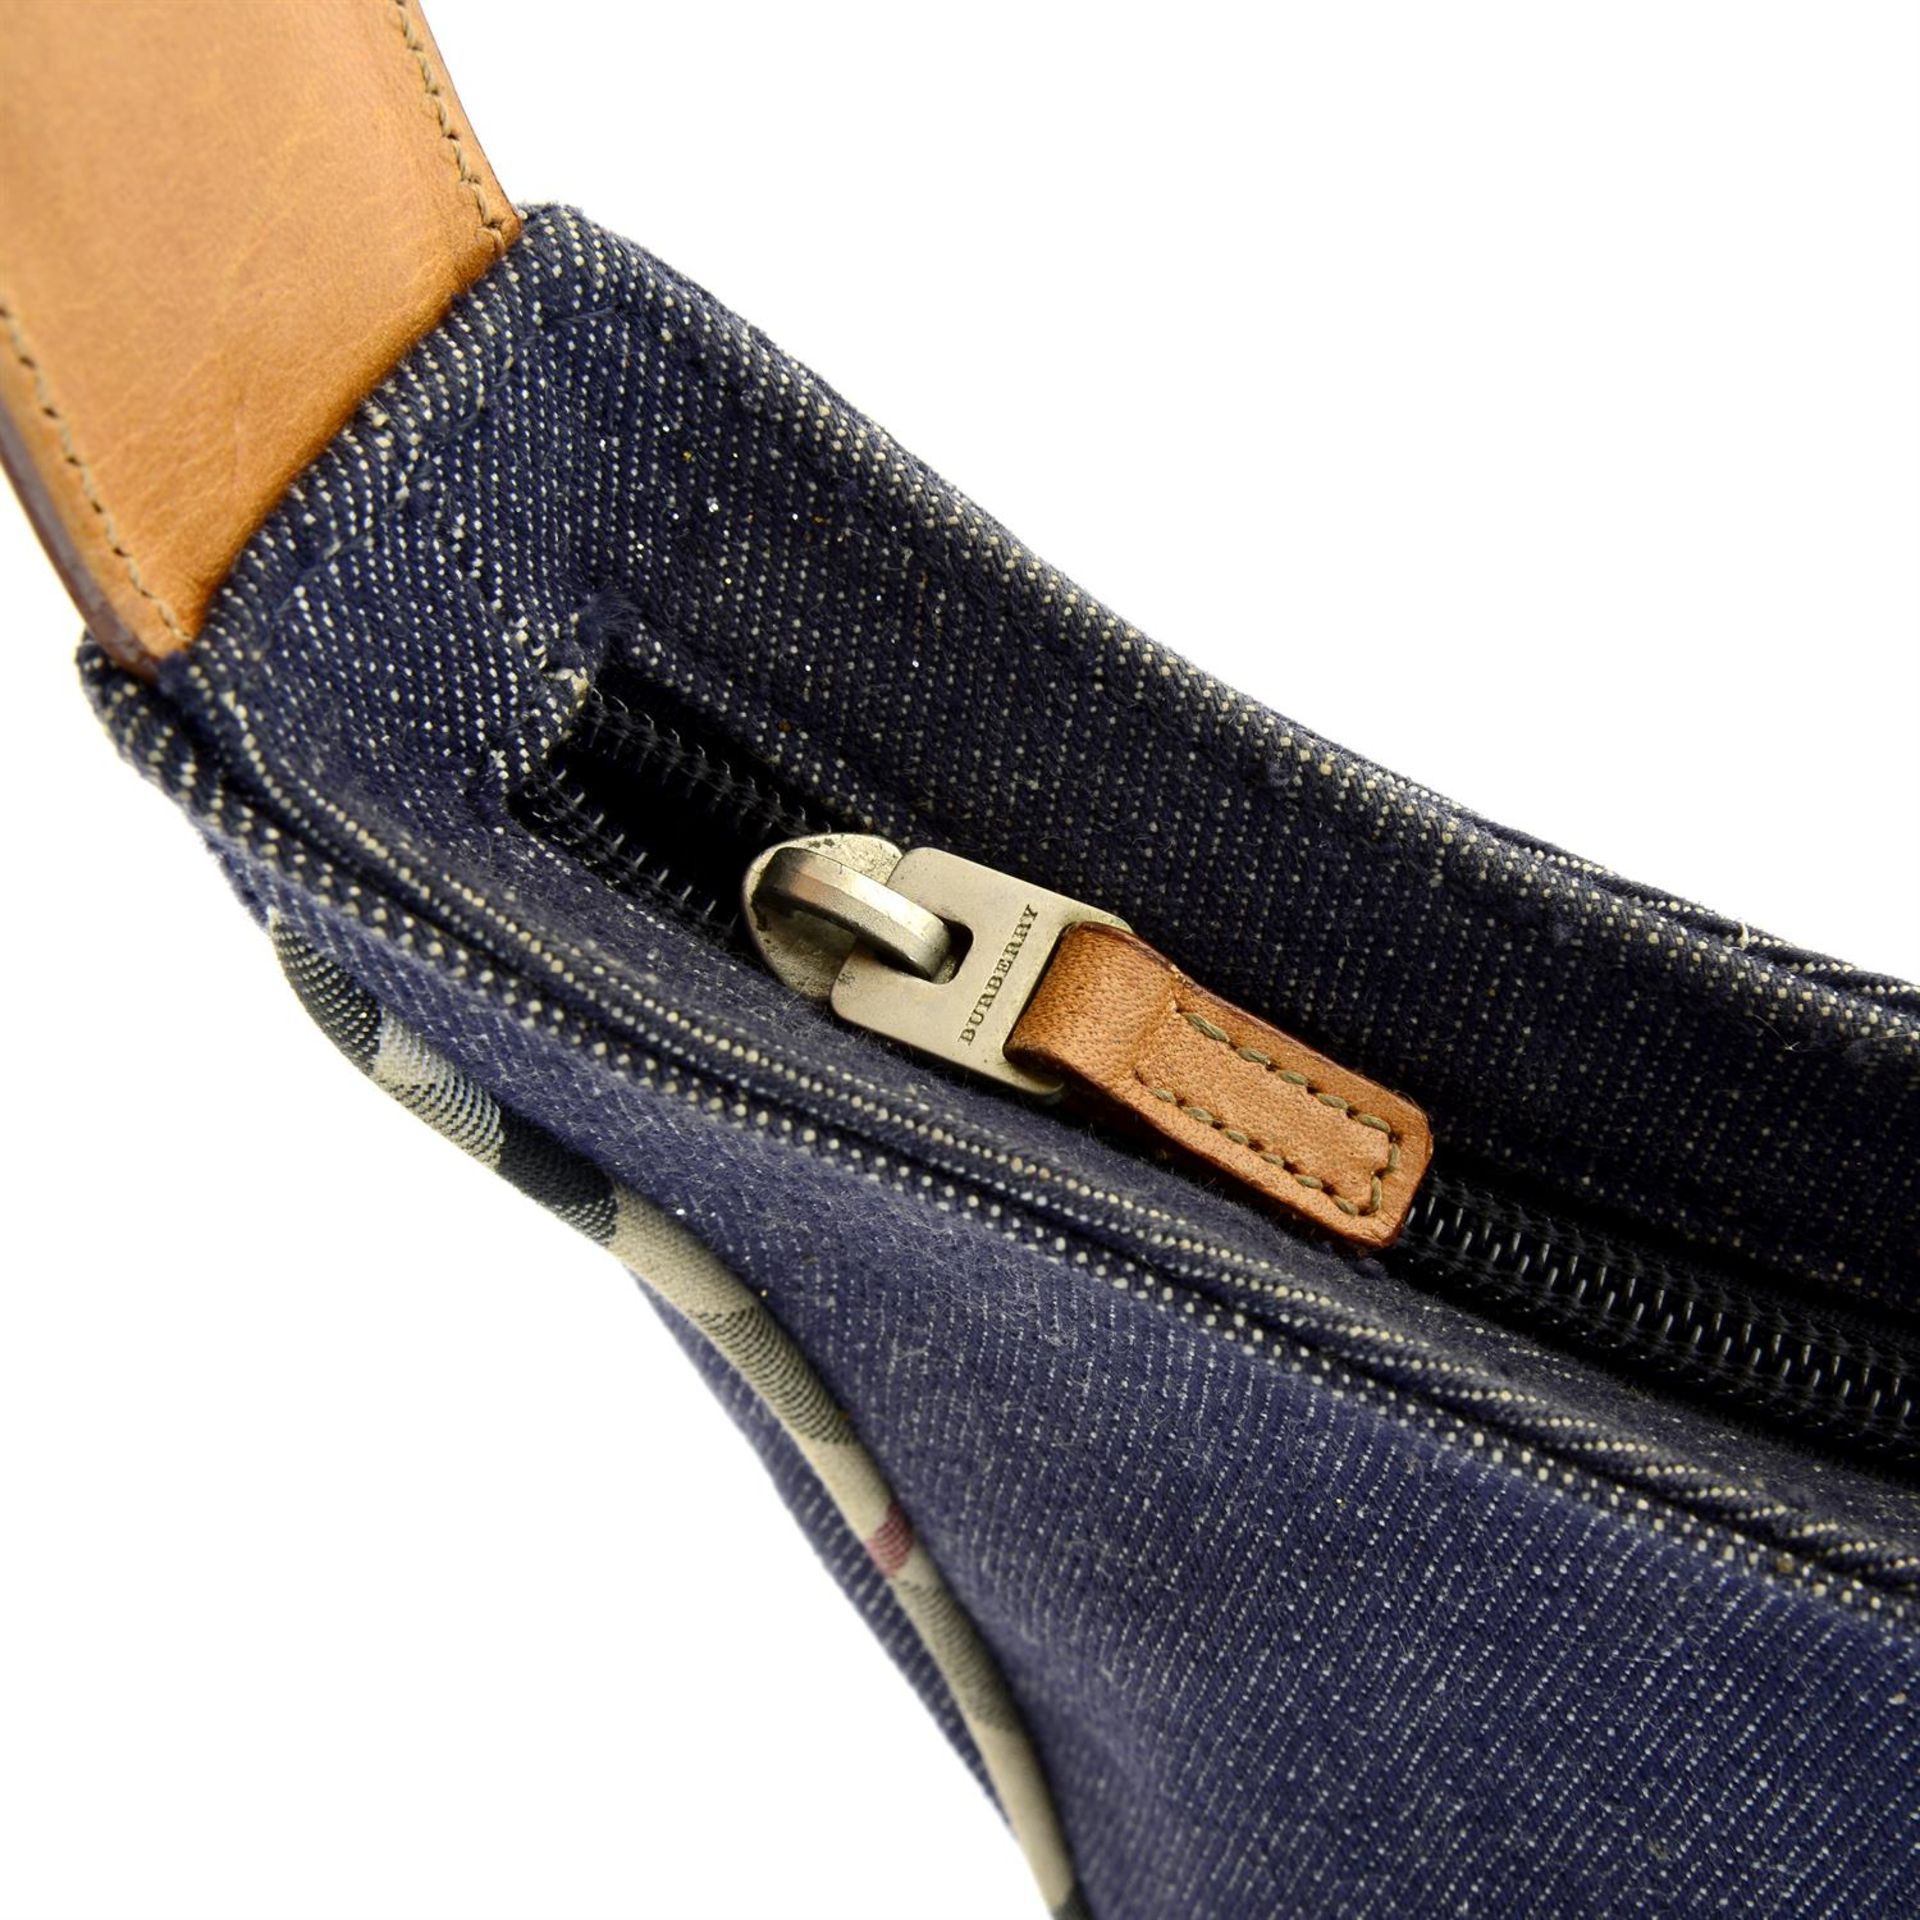 BURBERRY - a blue denim handbag. - Image 4 of 4